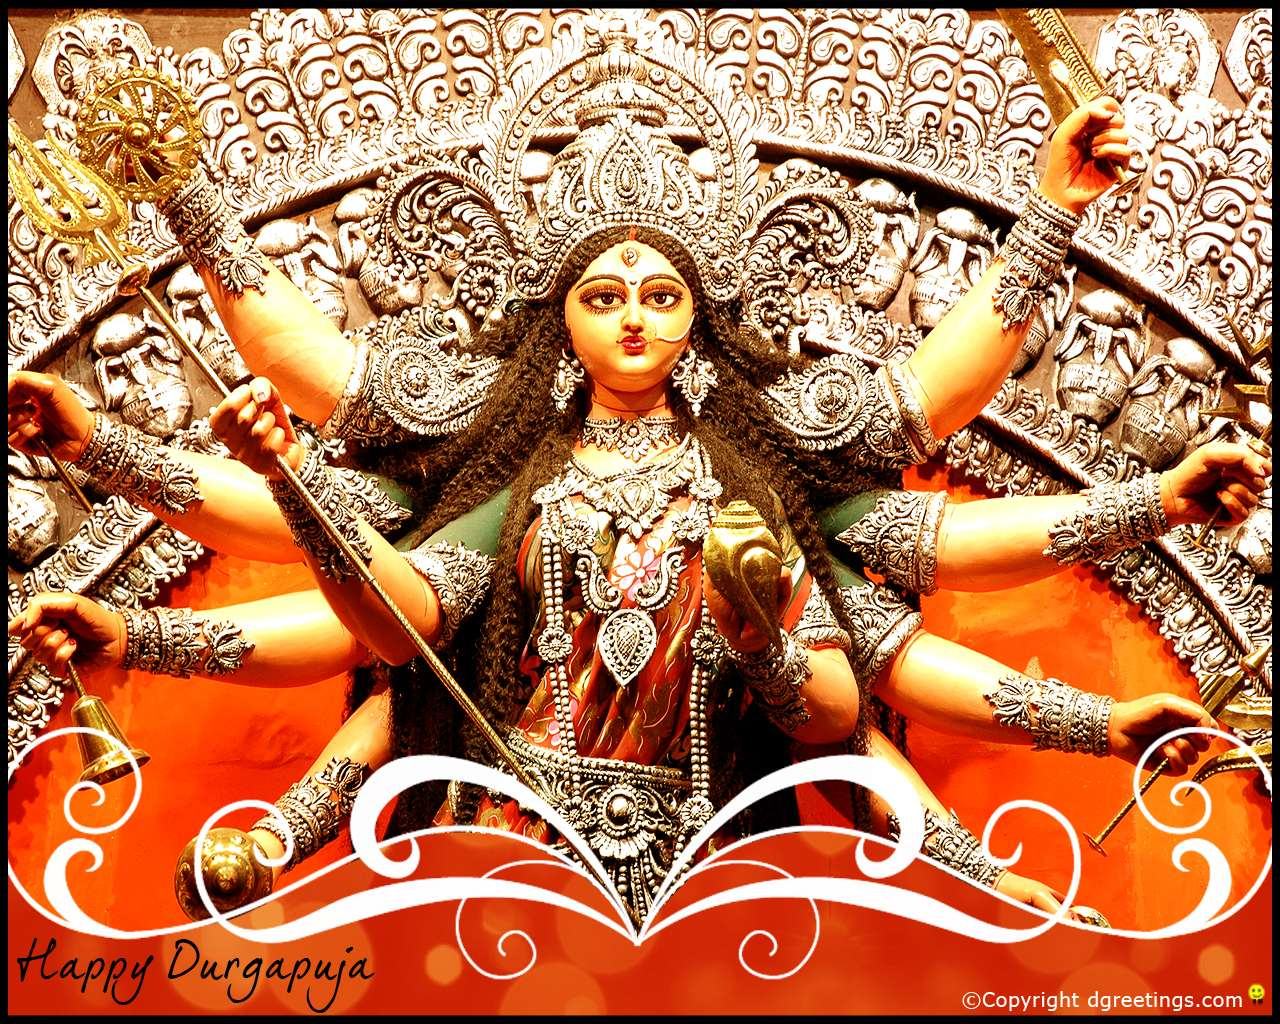 God Durga HD Wallpaper - WallpaperSafari